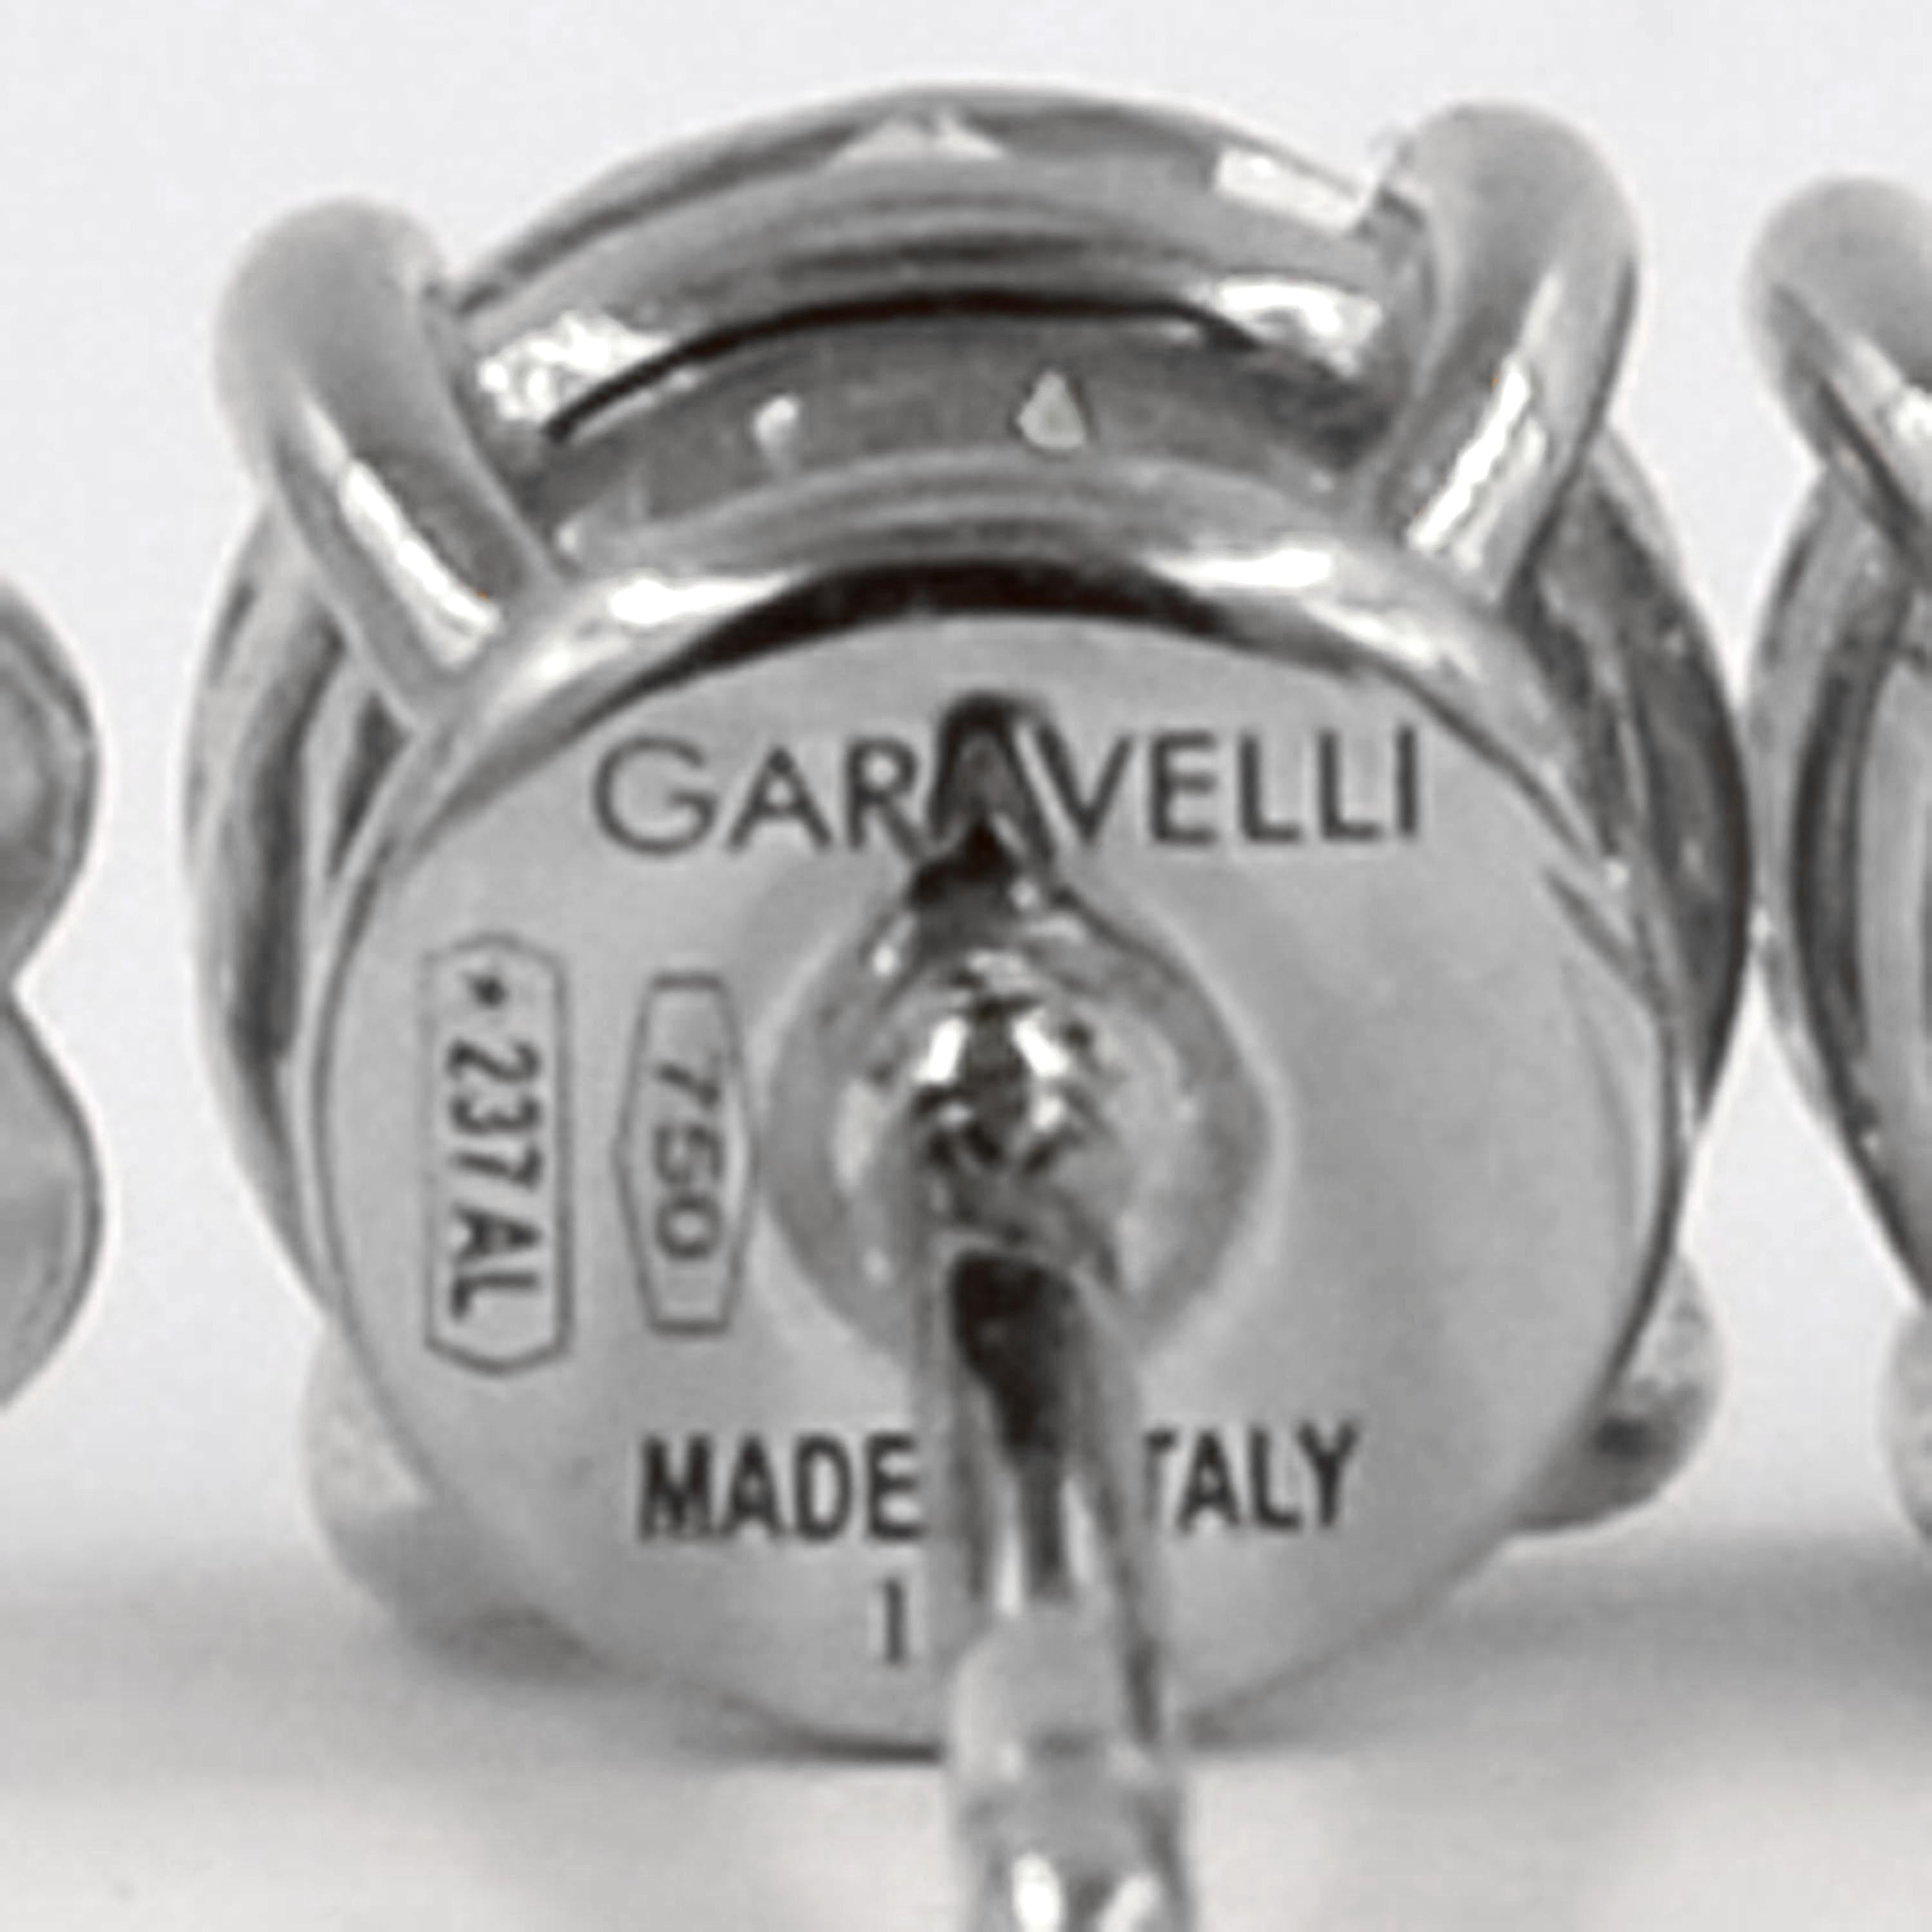 Contemporary Garavelli 18 Karat White Gold Diamonds Stud Earrings For Sale